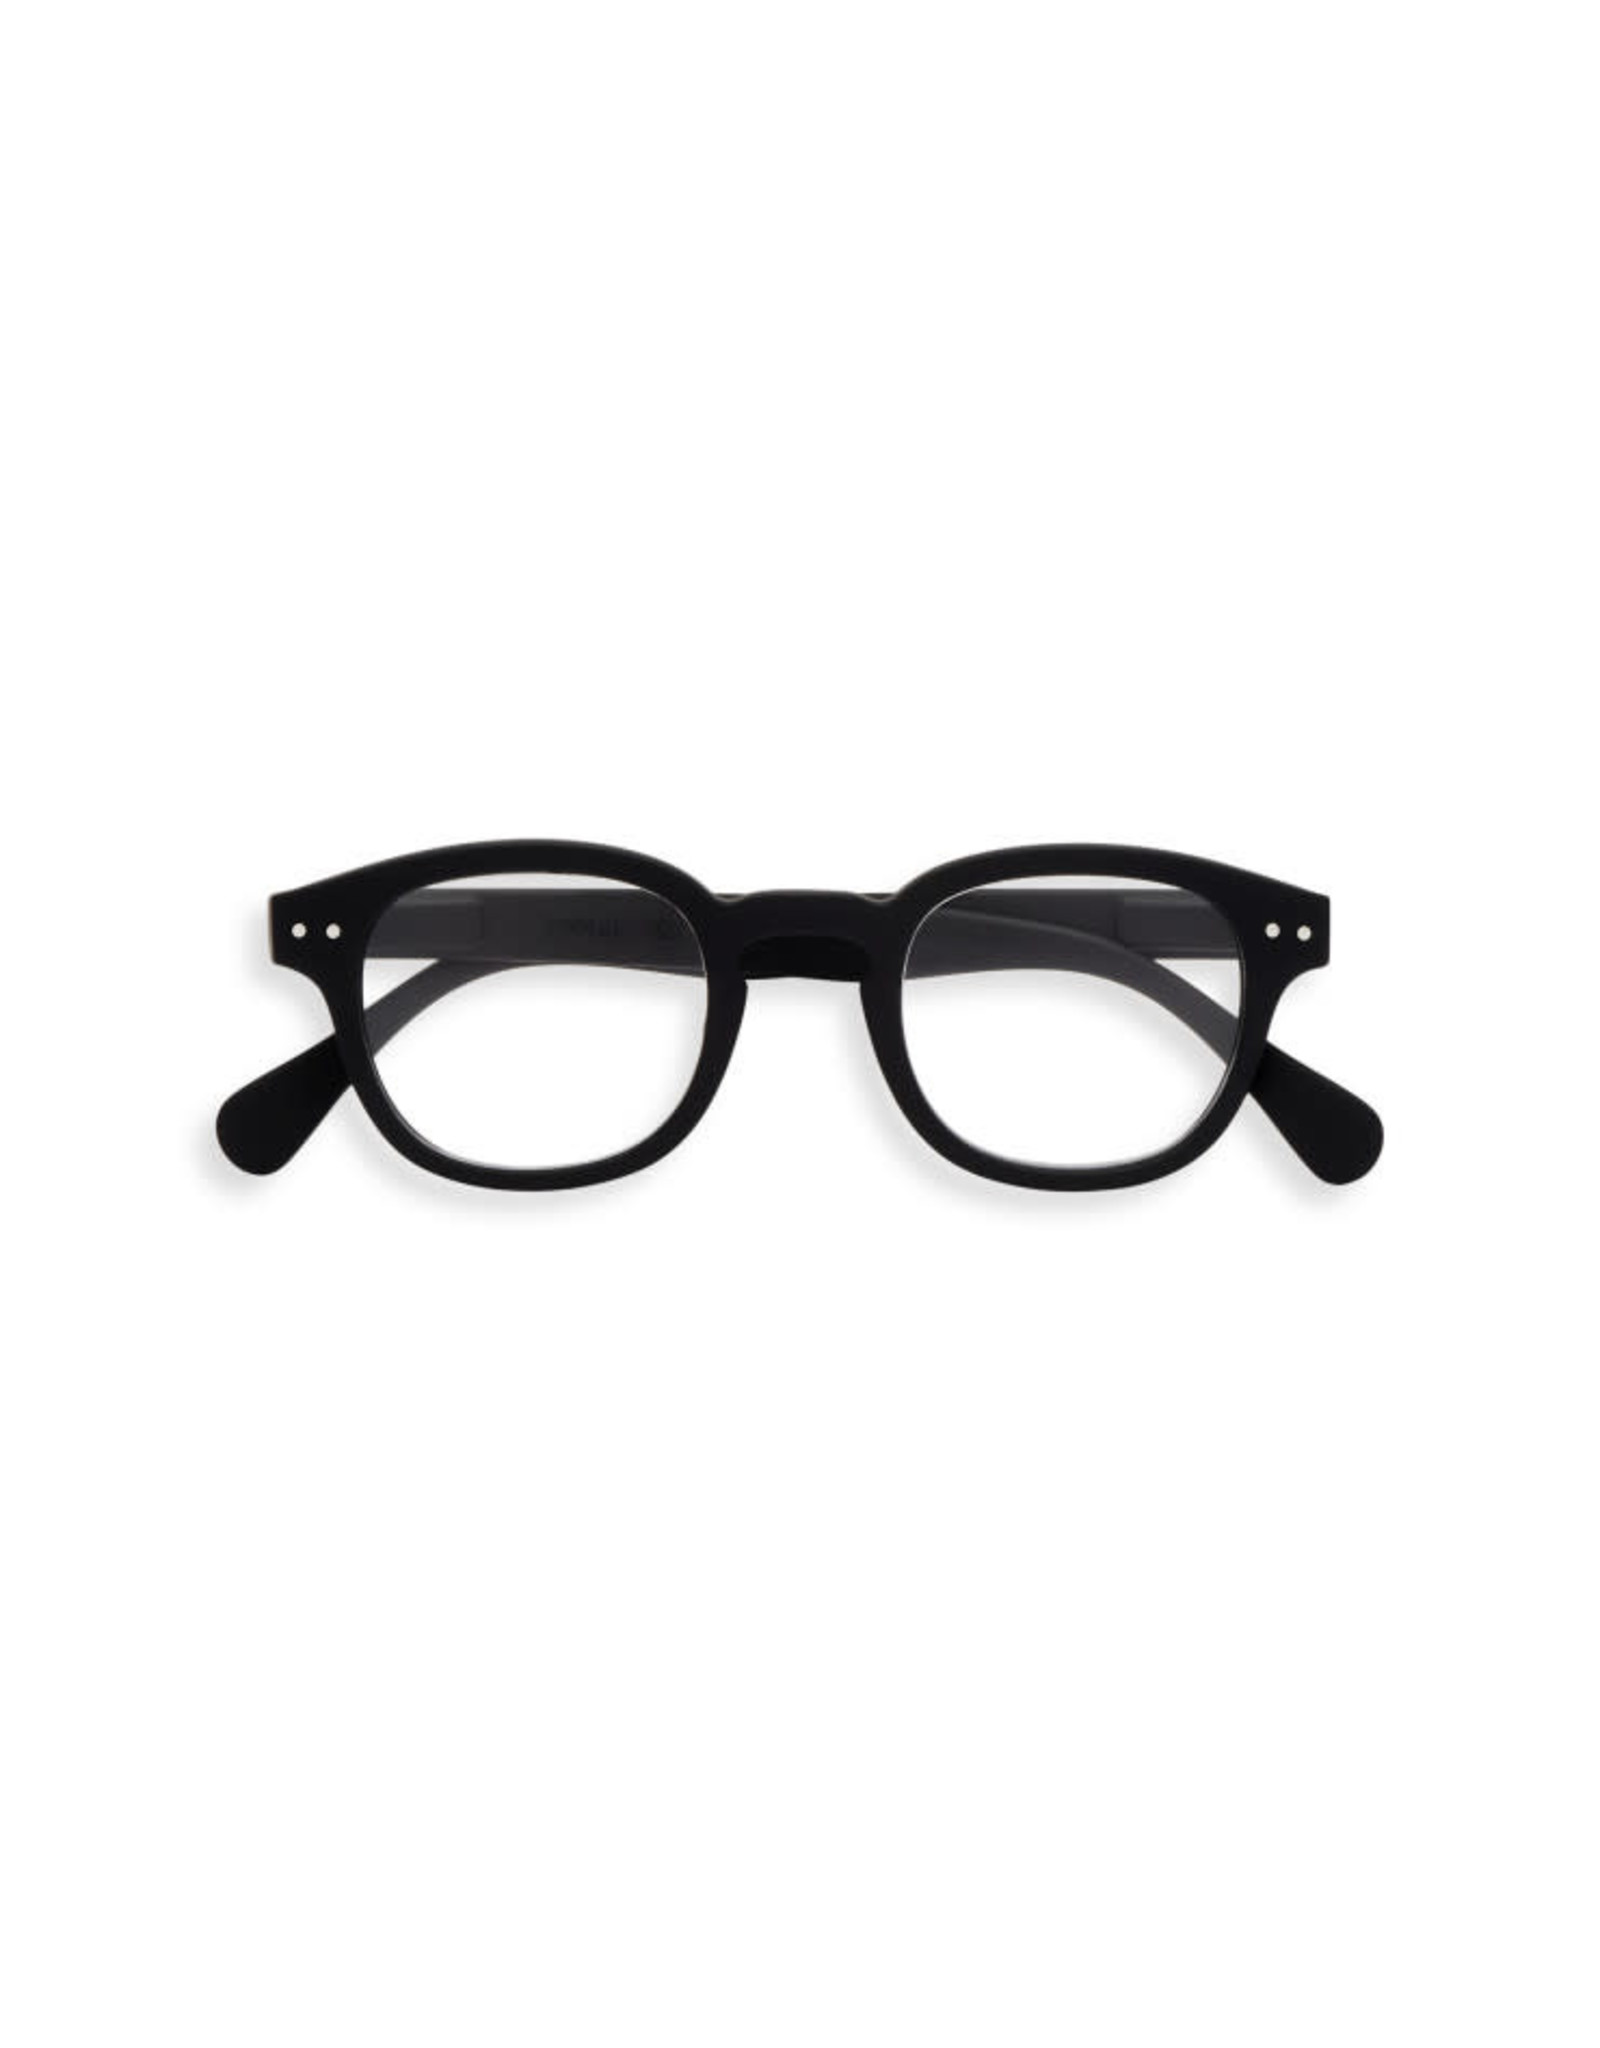 IZIPIZI C Reading Glasses, Black, 1.0